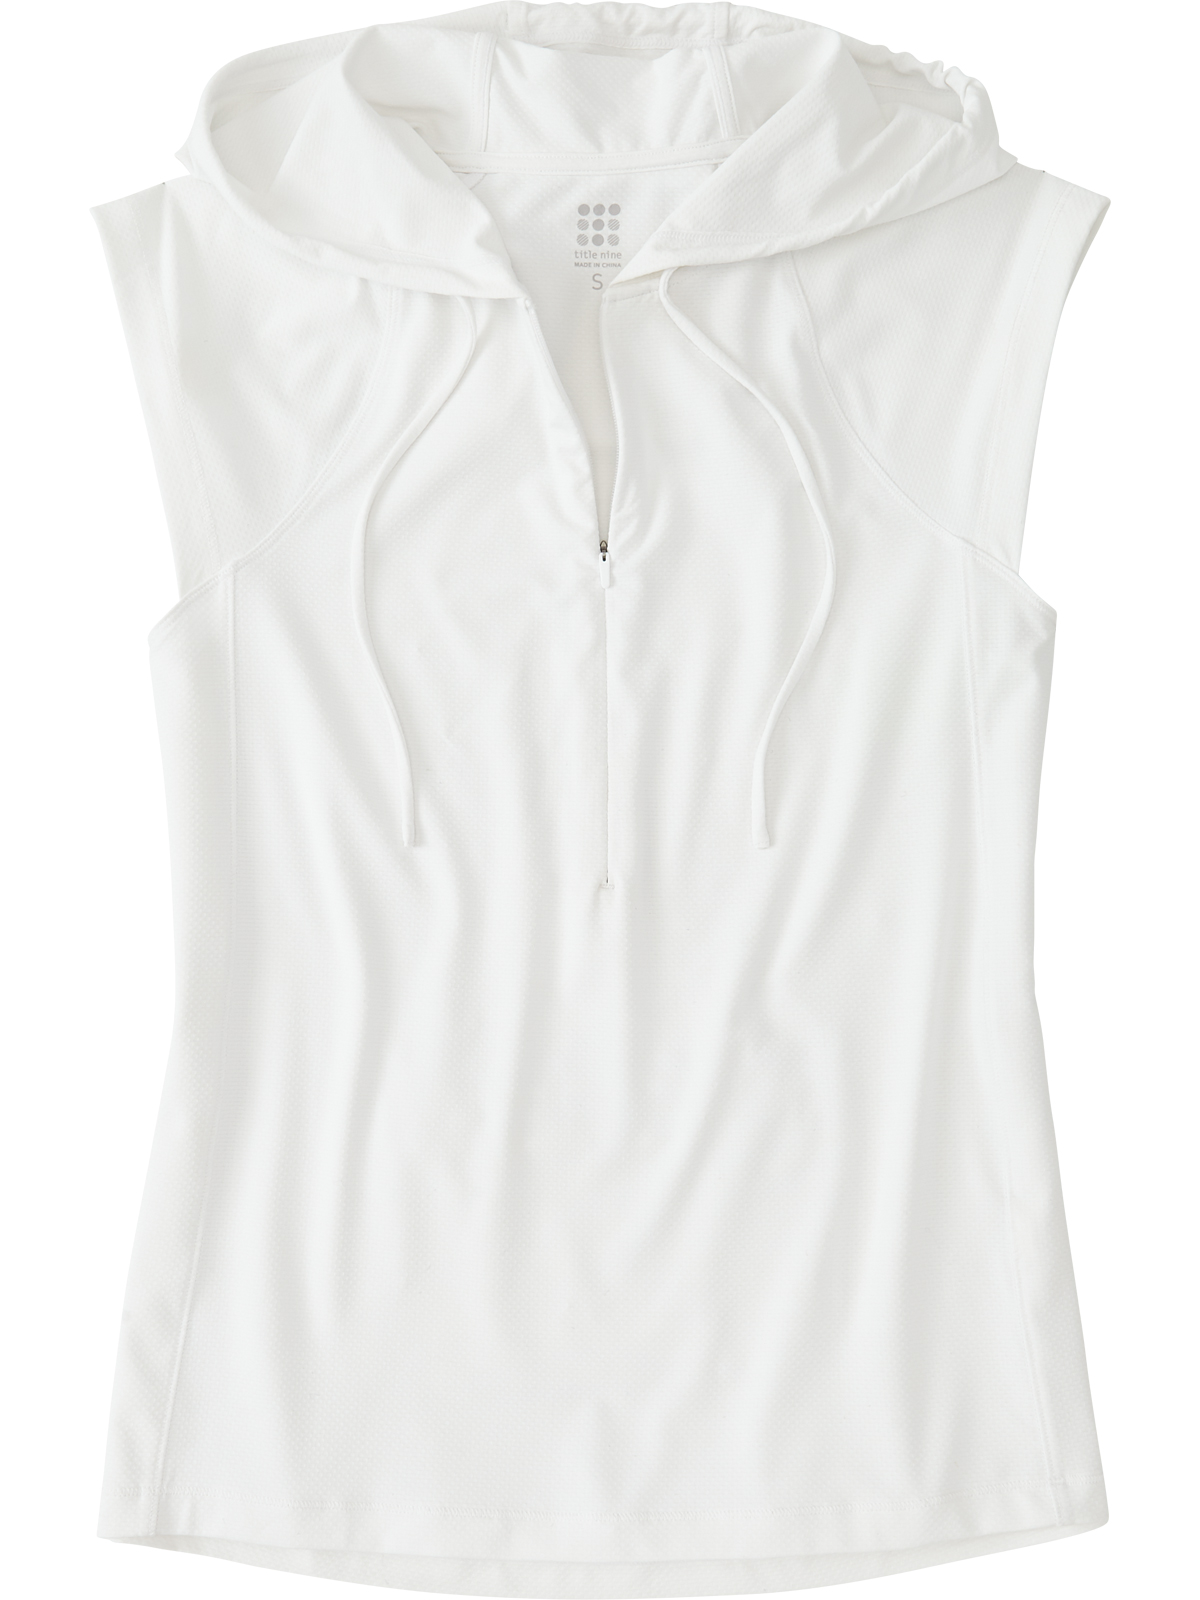 Womens Long Sleeve Sun Shirt: Sunbuster 1/4 Zip